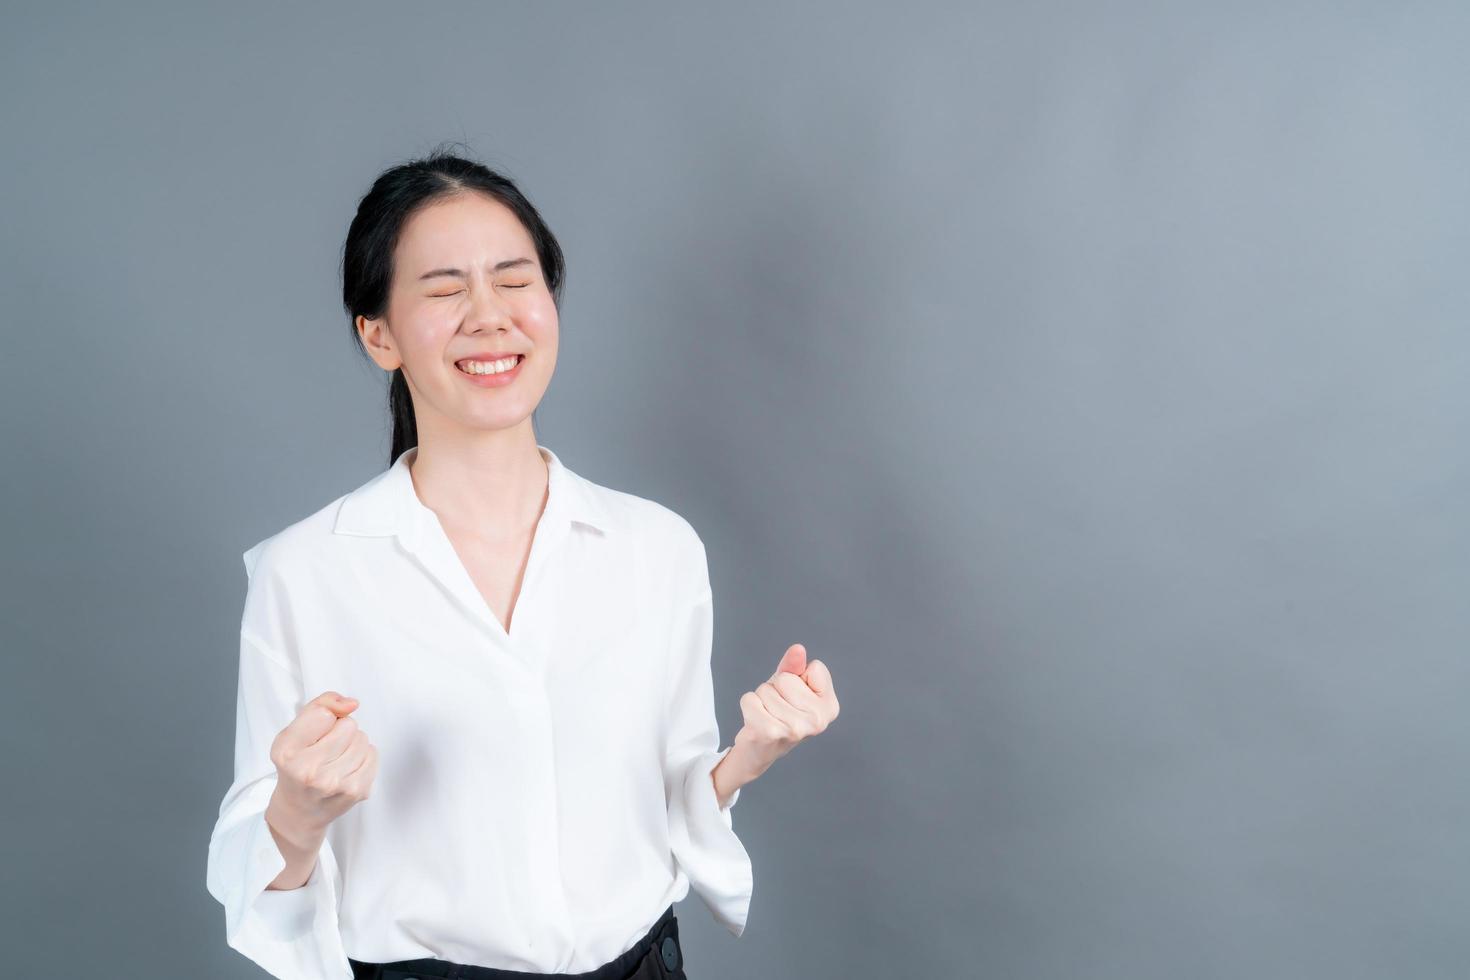 femme asiatique se réjouissant de son succès et de sa victoire serrant les poings de joie femme chanceuse heureuse d'atteindre son but et ses objectifs émotions positives sentiments photo